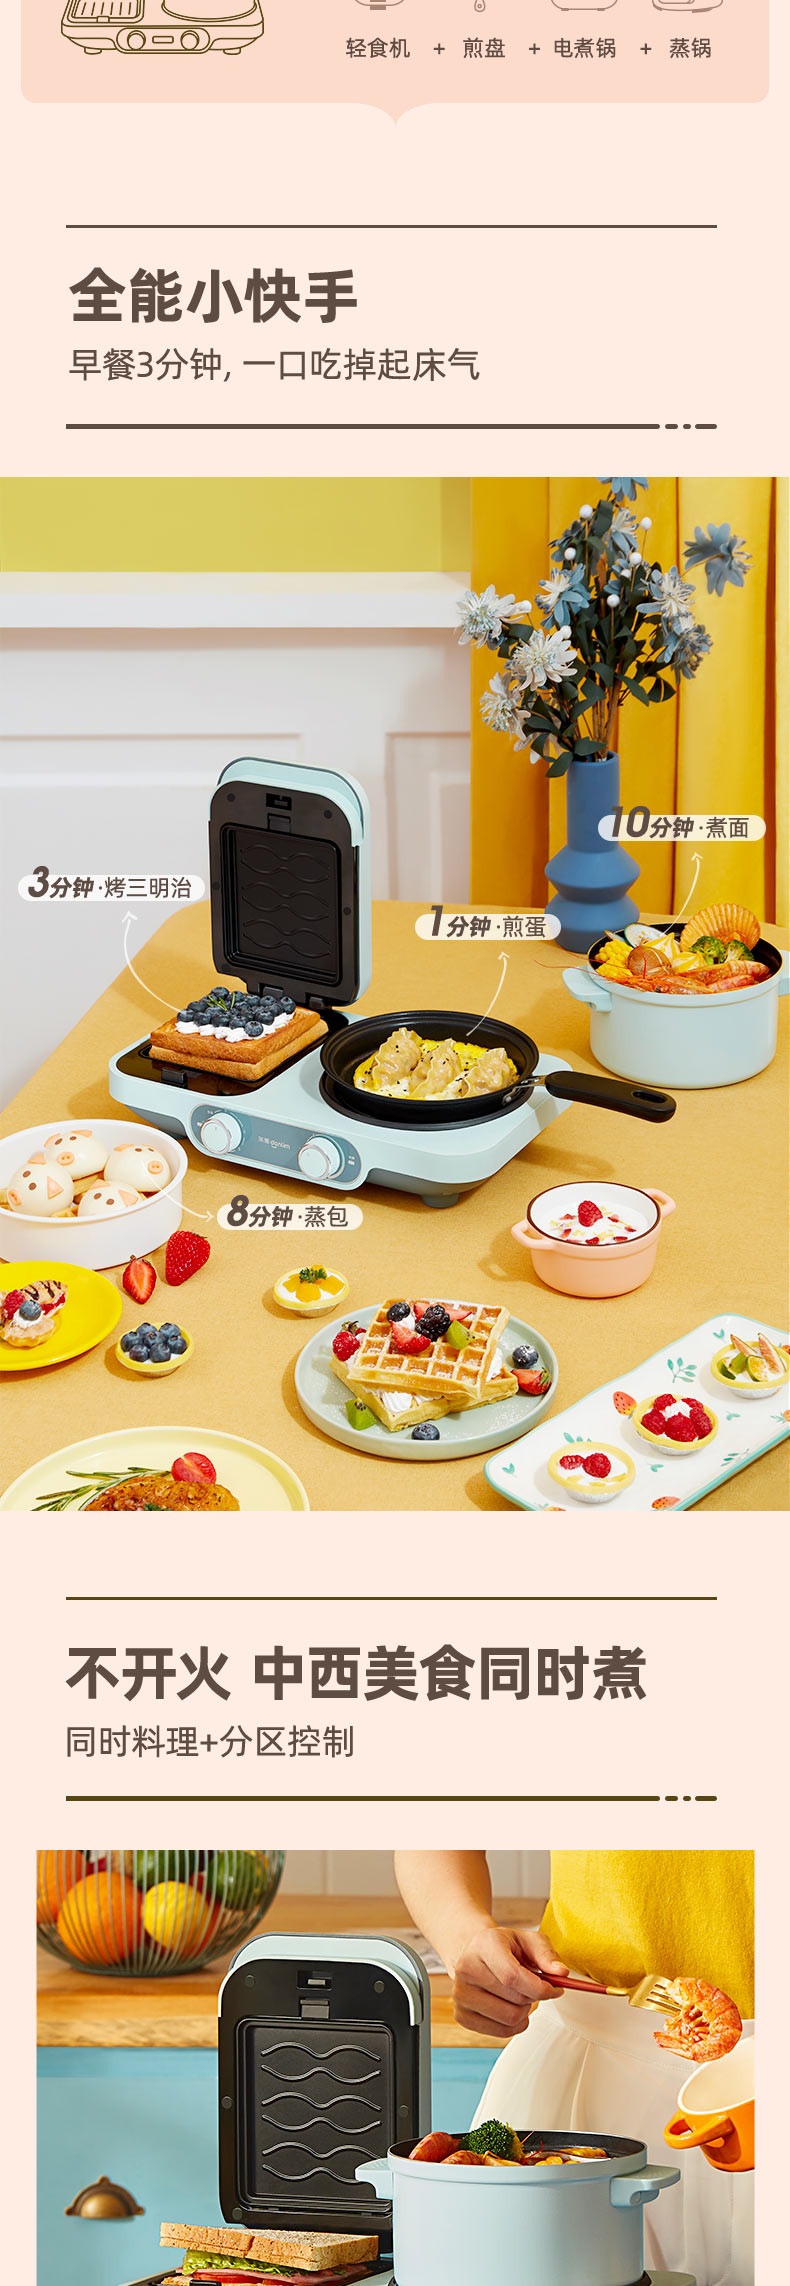  东菱 Donlim 烤面包机 多功能早餐机 三明治机 华夫饼机 多士炉  DL-3452(晴空蓝)